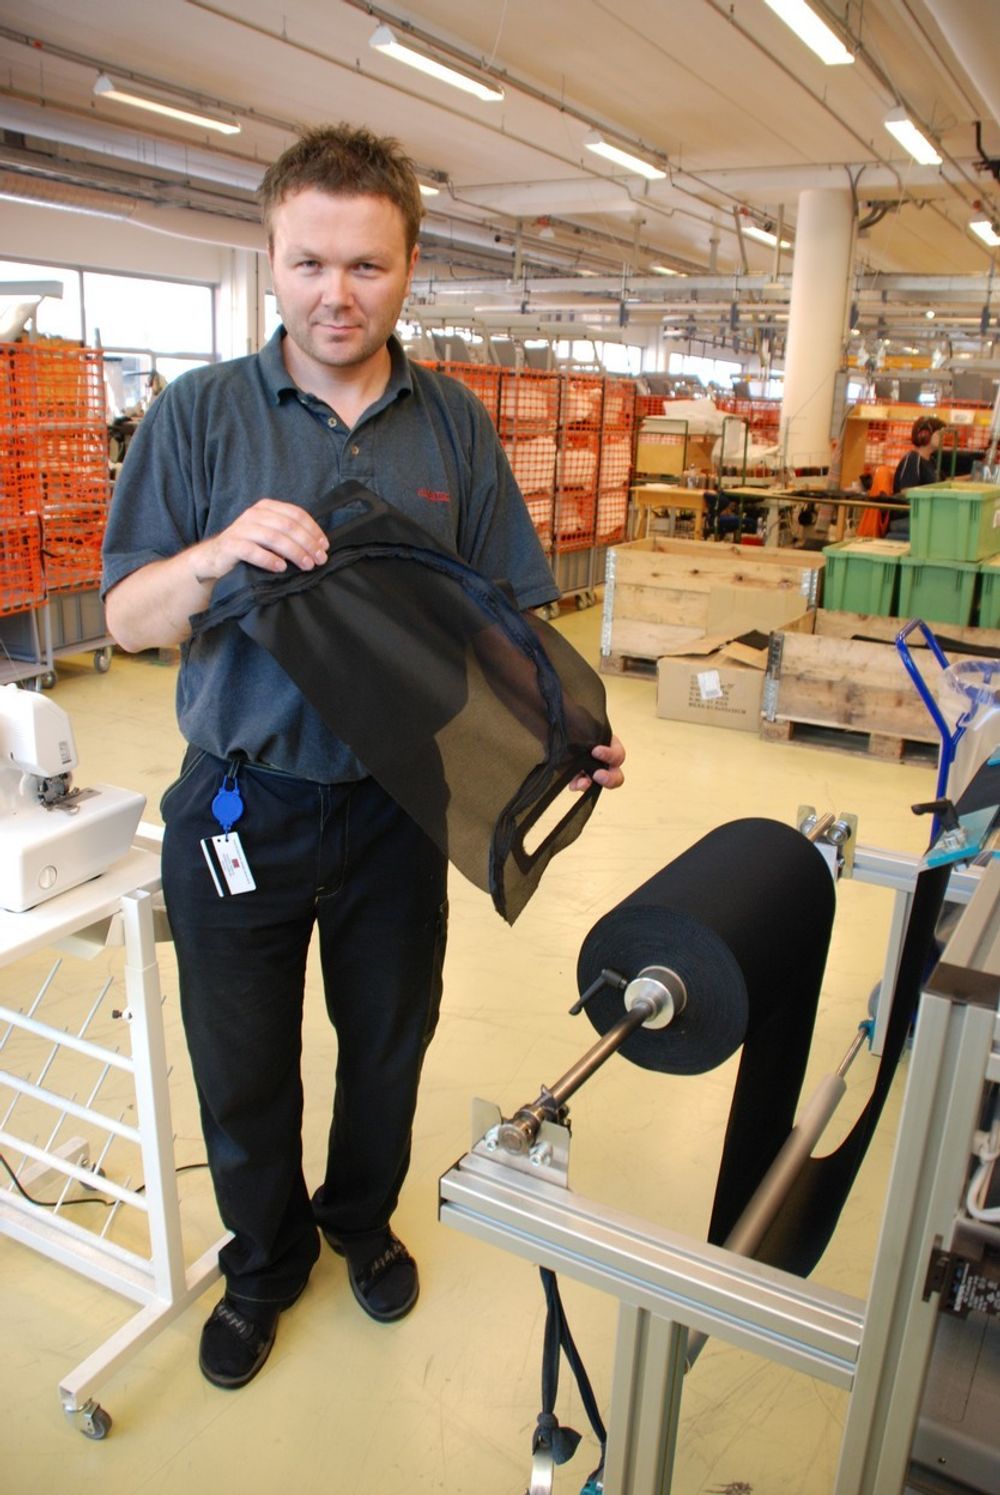 PRODUSERT AV AMATEC: Tor Ronny Gjelstenli viser fram et ferdig sydd undertrekk - produsert av sømmaskinen. Gjelstenli er servicetekniker, og kommer fra bedriften Amatec som har produsert maskinen.